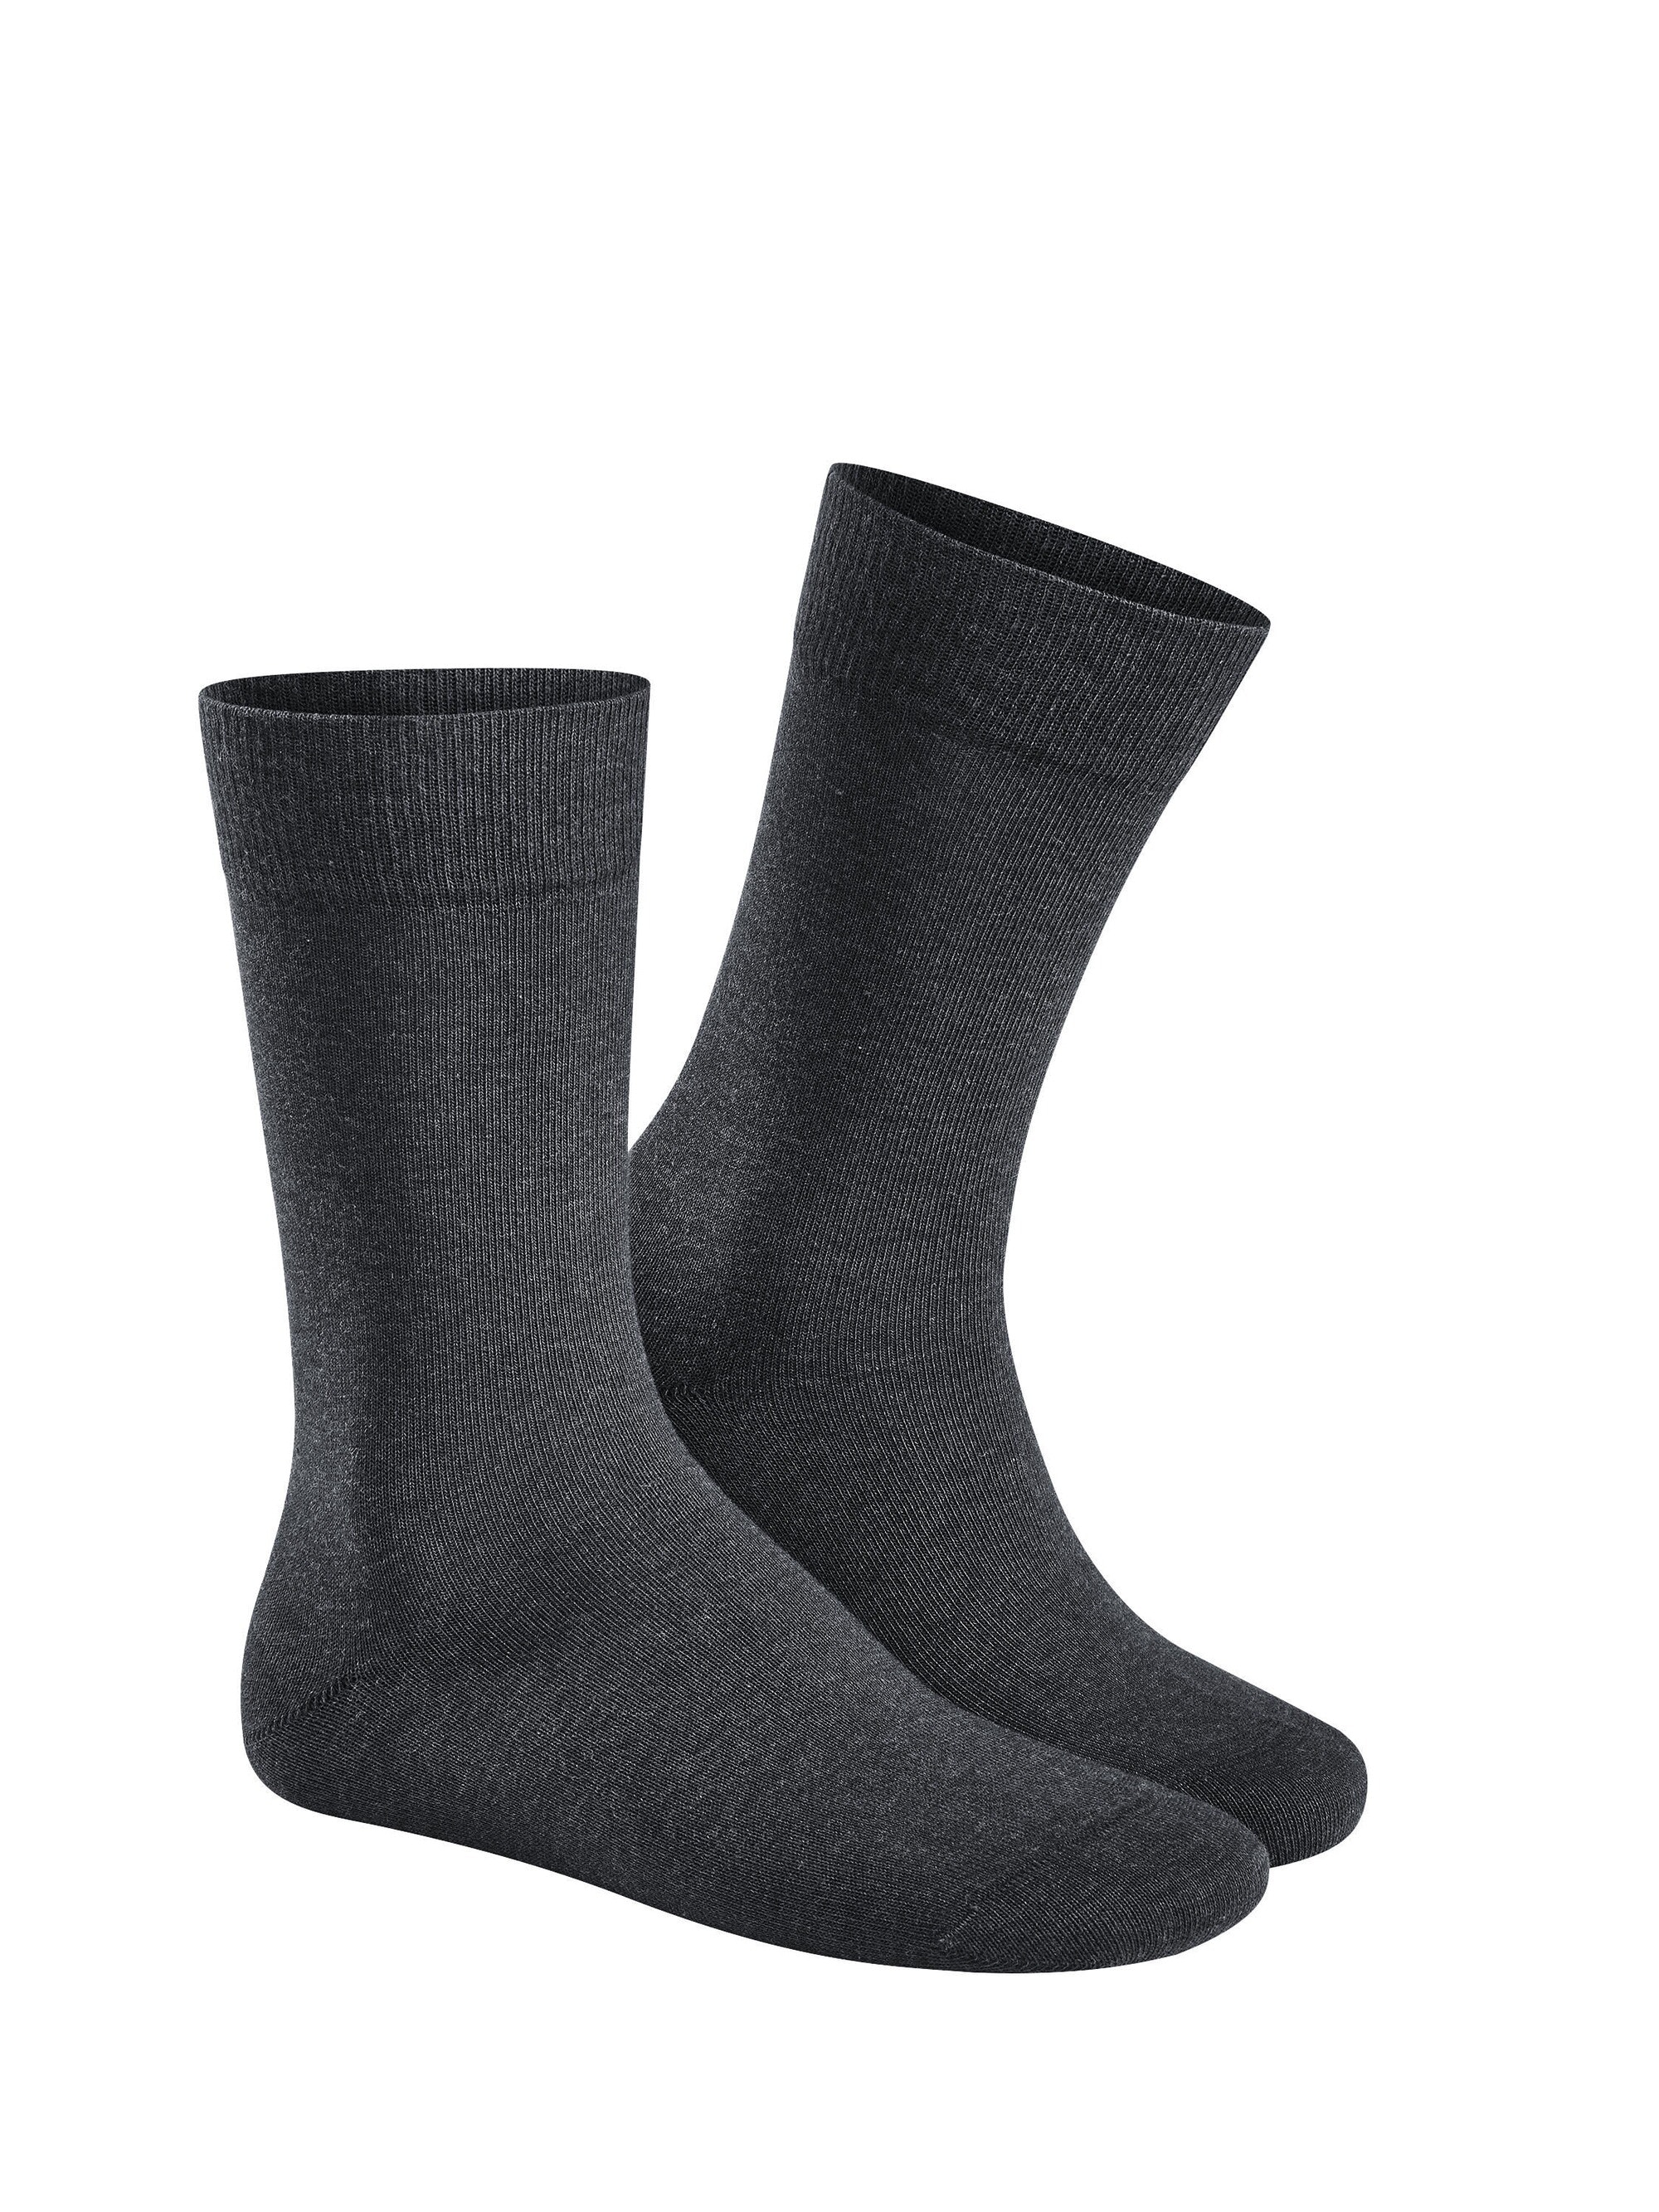 Herren-Socke "Relax Cotton" mit druckfreiem Bündchen aus elastischer Baumwolle